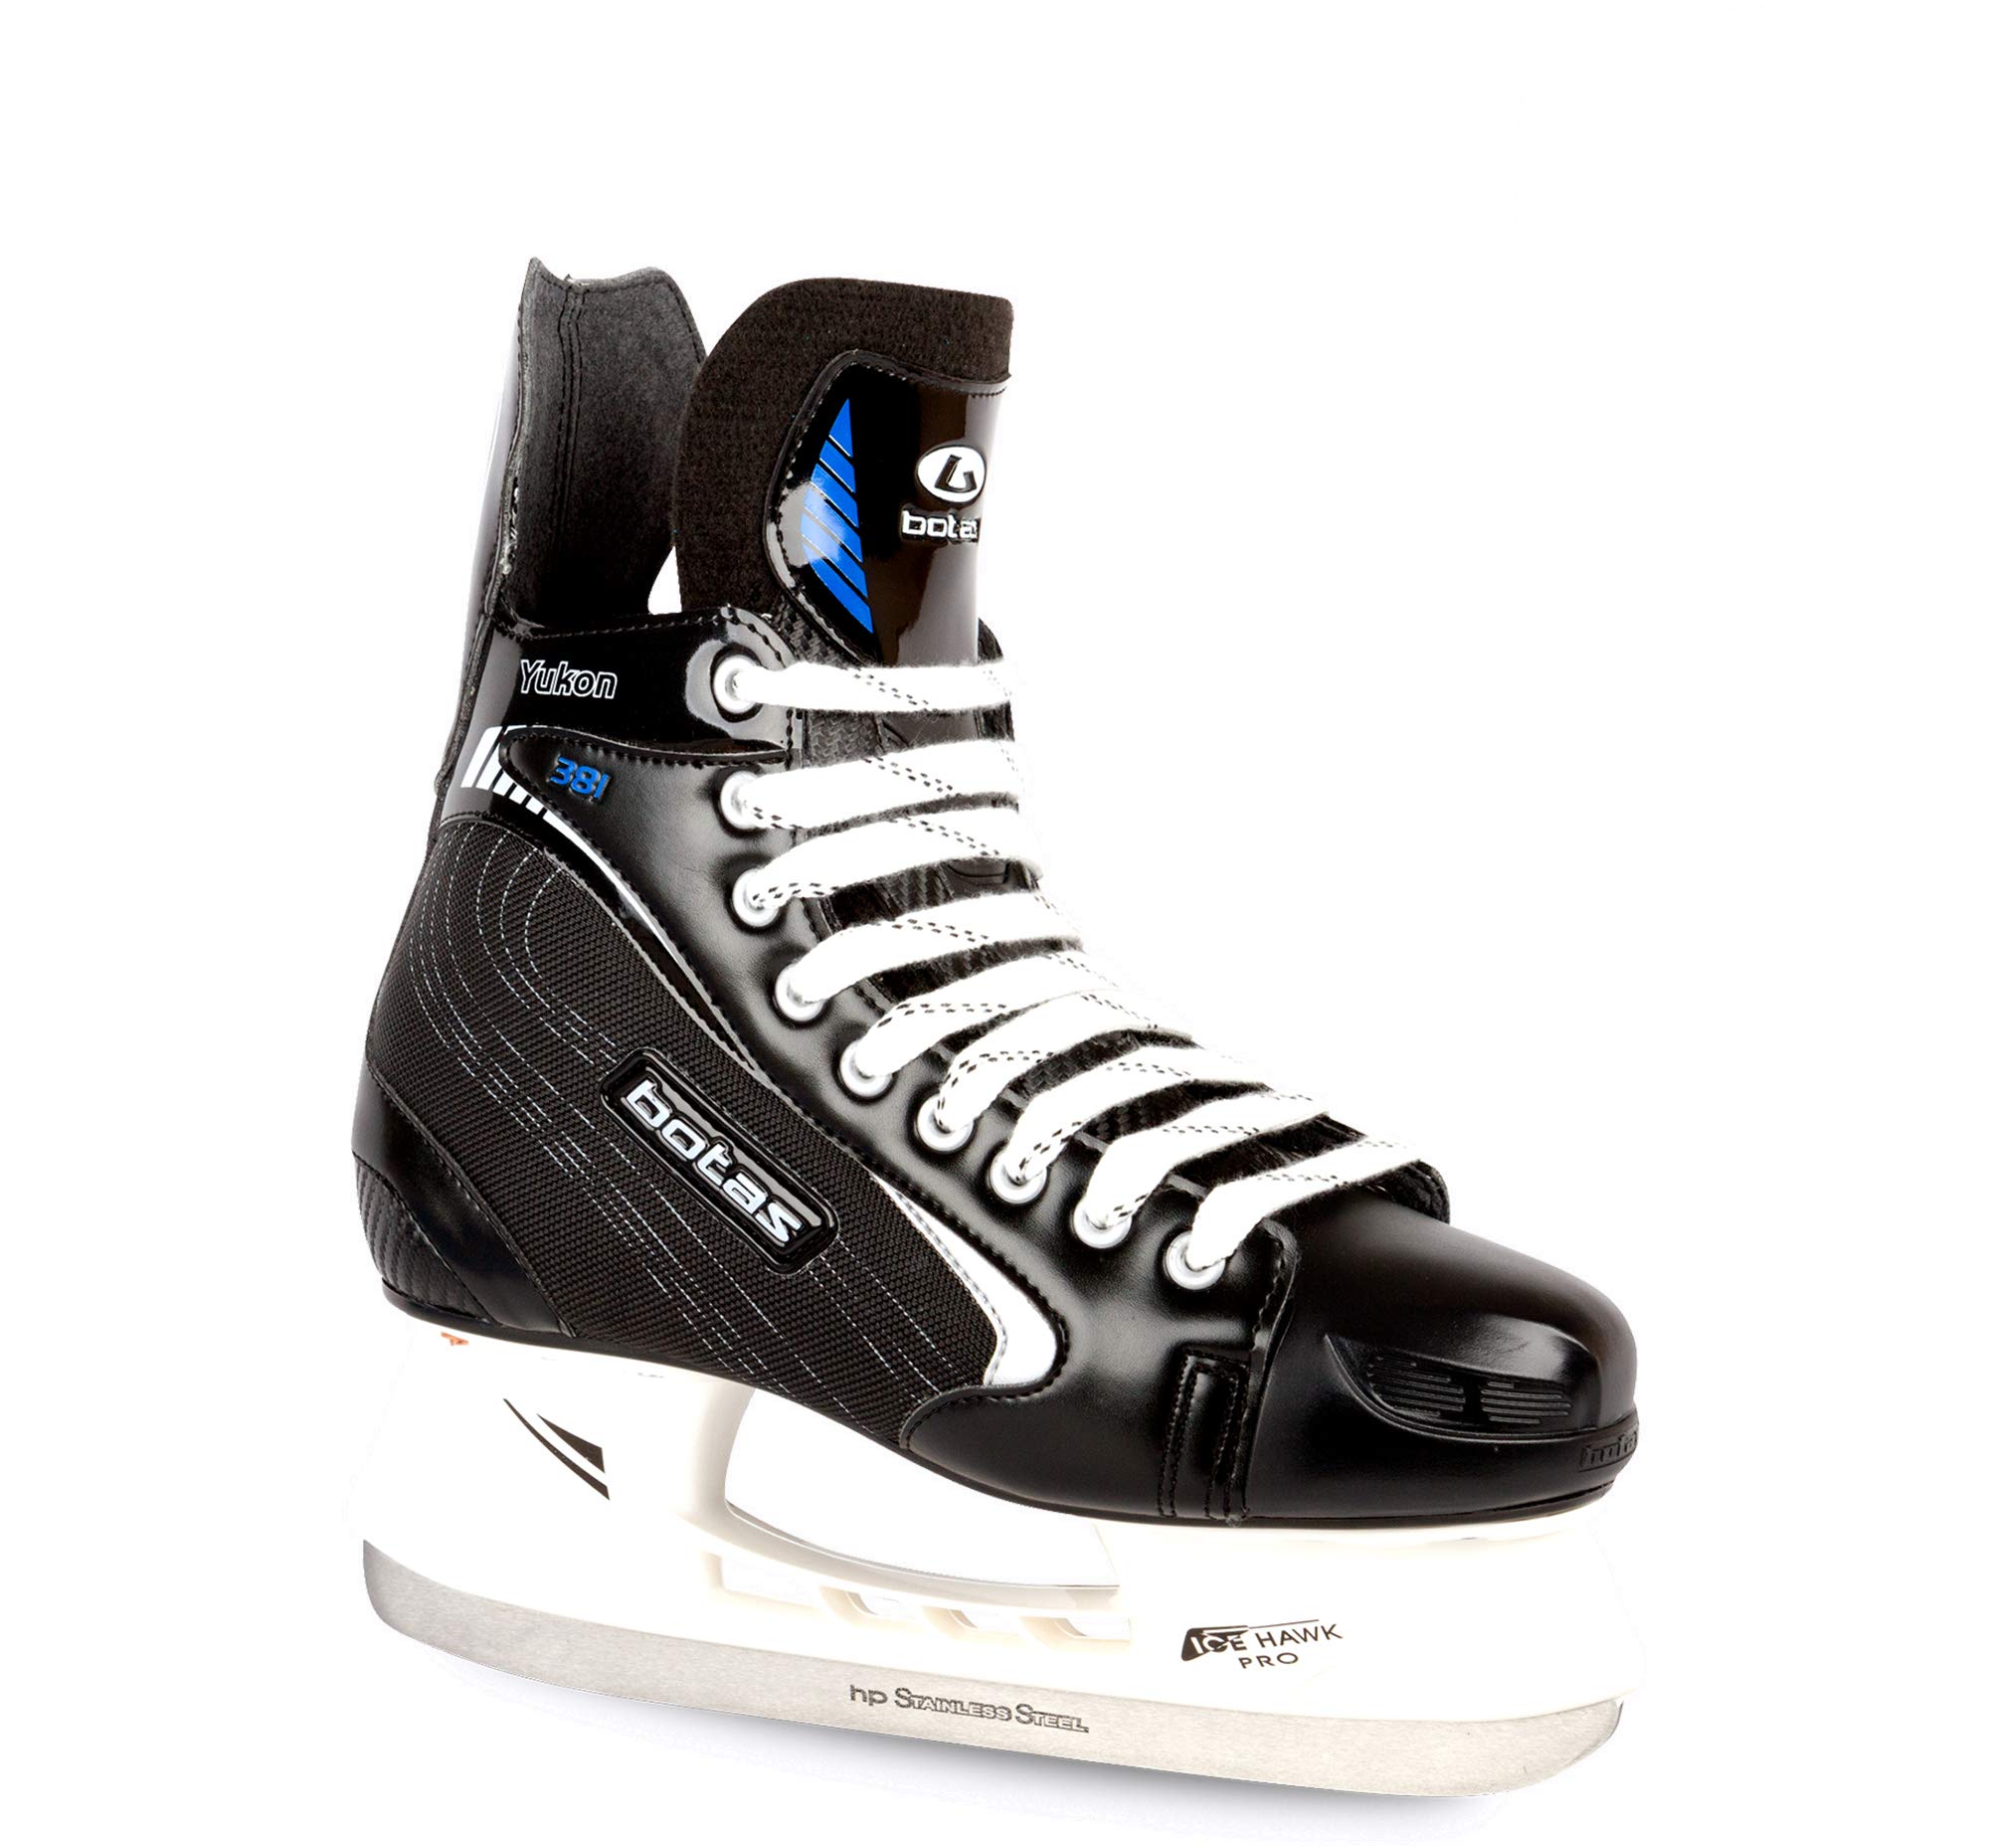 Botas - Yukon 381 - Men's Ice Hockey Skates